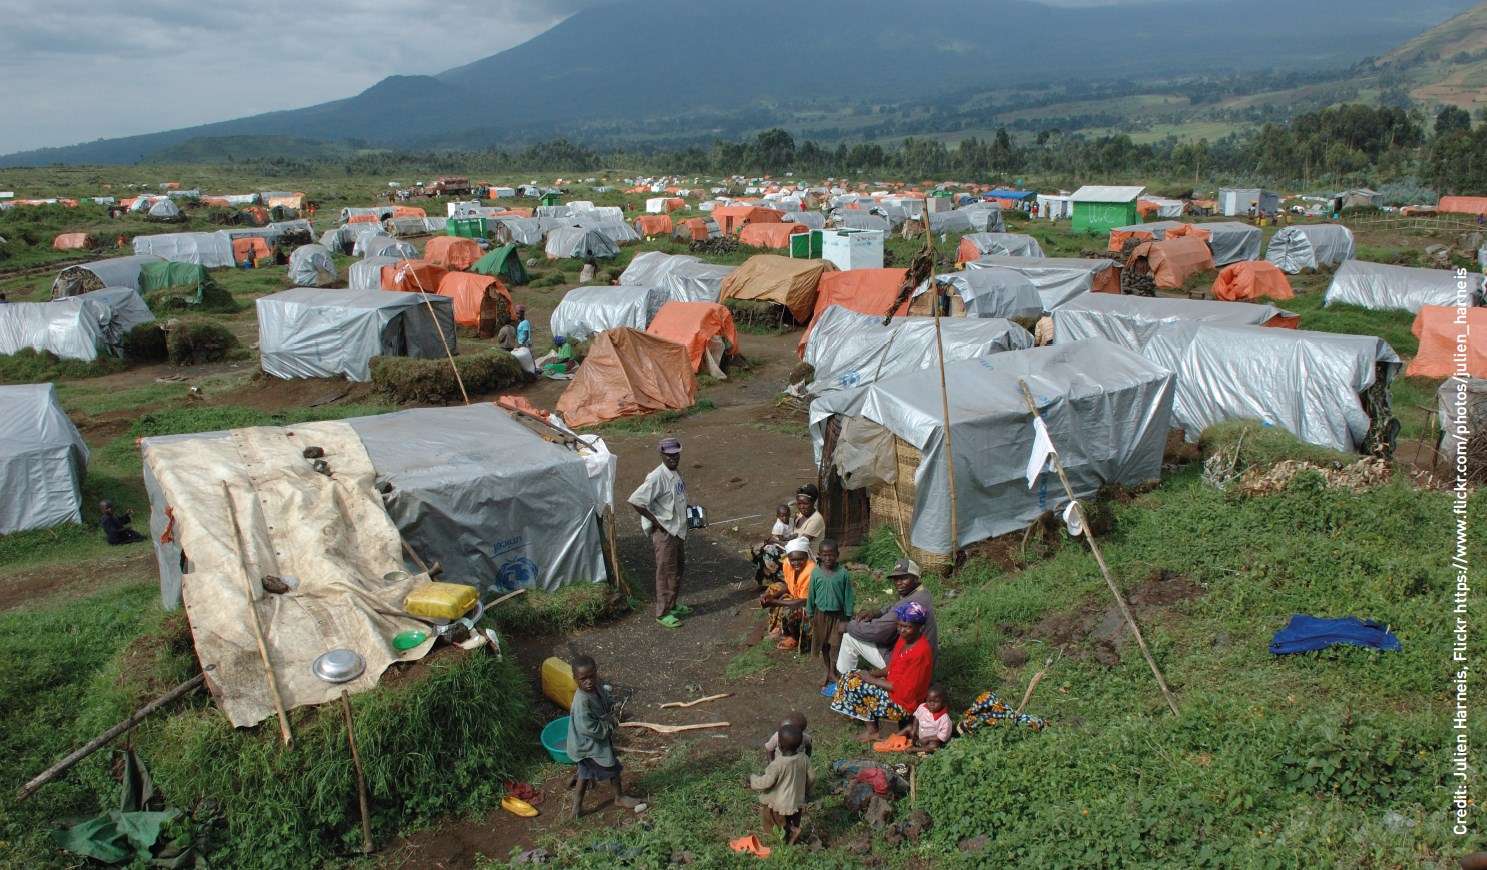 Обеспечение функционирования лагерей для перемещенных лиц наподобие Кибумбе в Демократической Республике Конго, может быть возможным с предварительным уведомлением о столкновении с астероидом. Авторское право: Julien Harneis, Flickr https://www.flickr.com/photos/julien_harneis